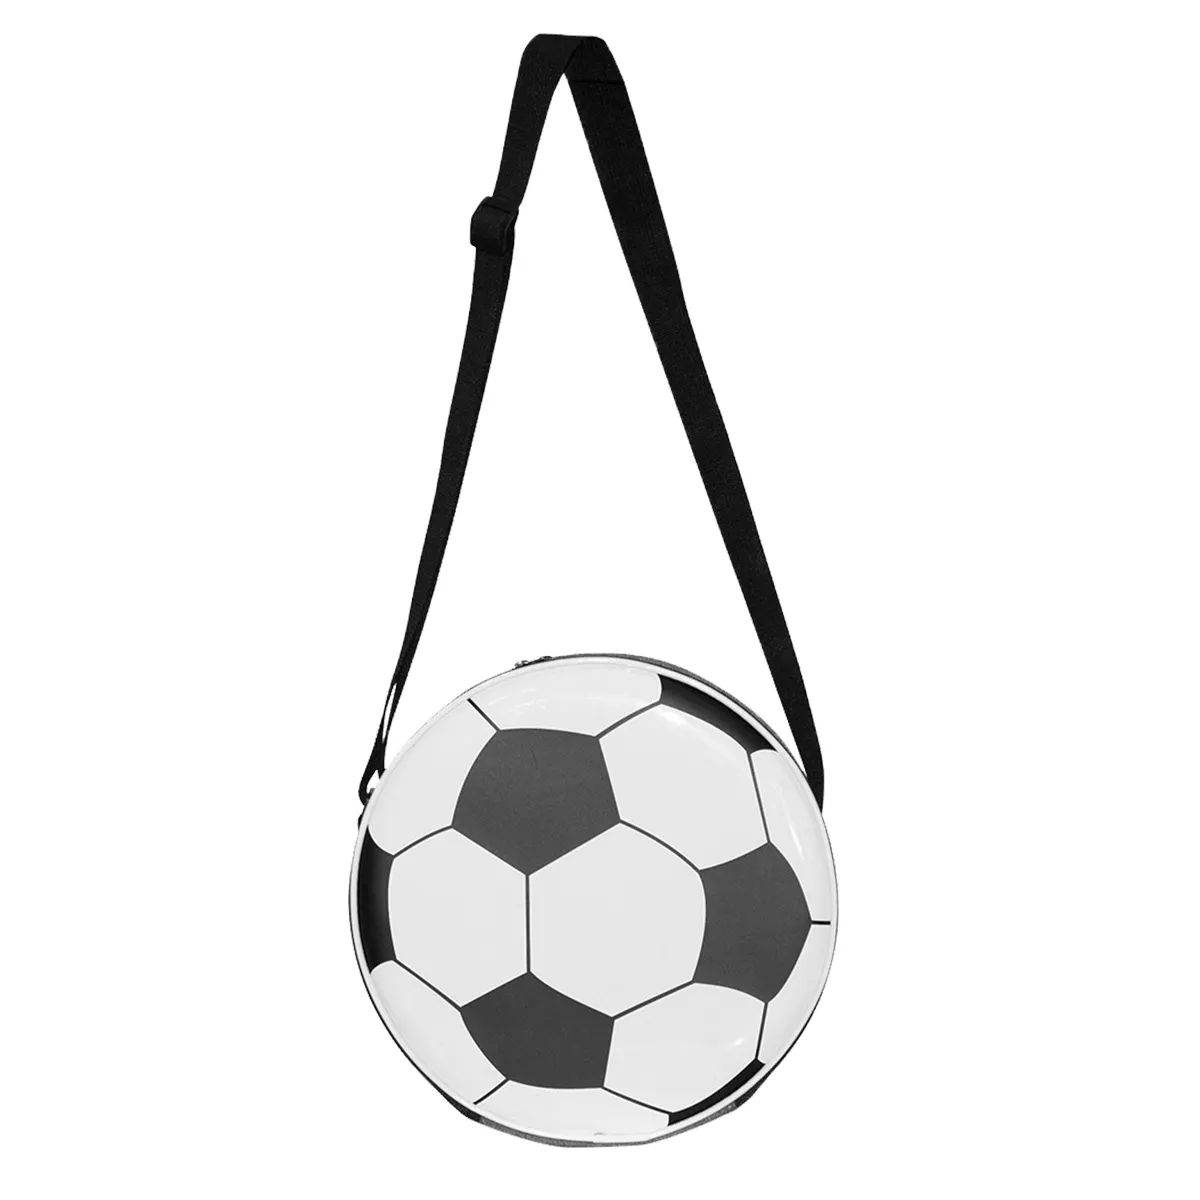 Nuova borsa isolante da calcio borsa da pranzo portatile impermeabile in tessuto Oxford portatile